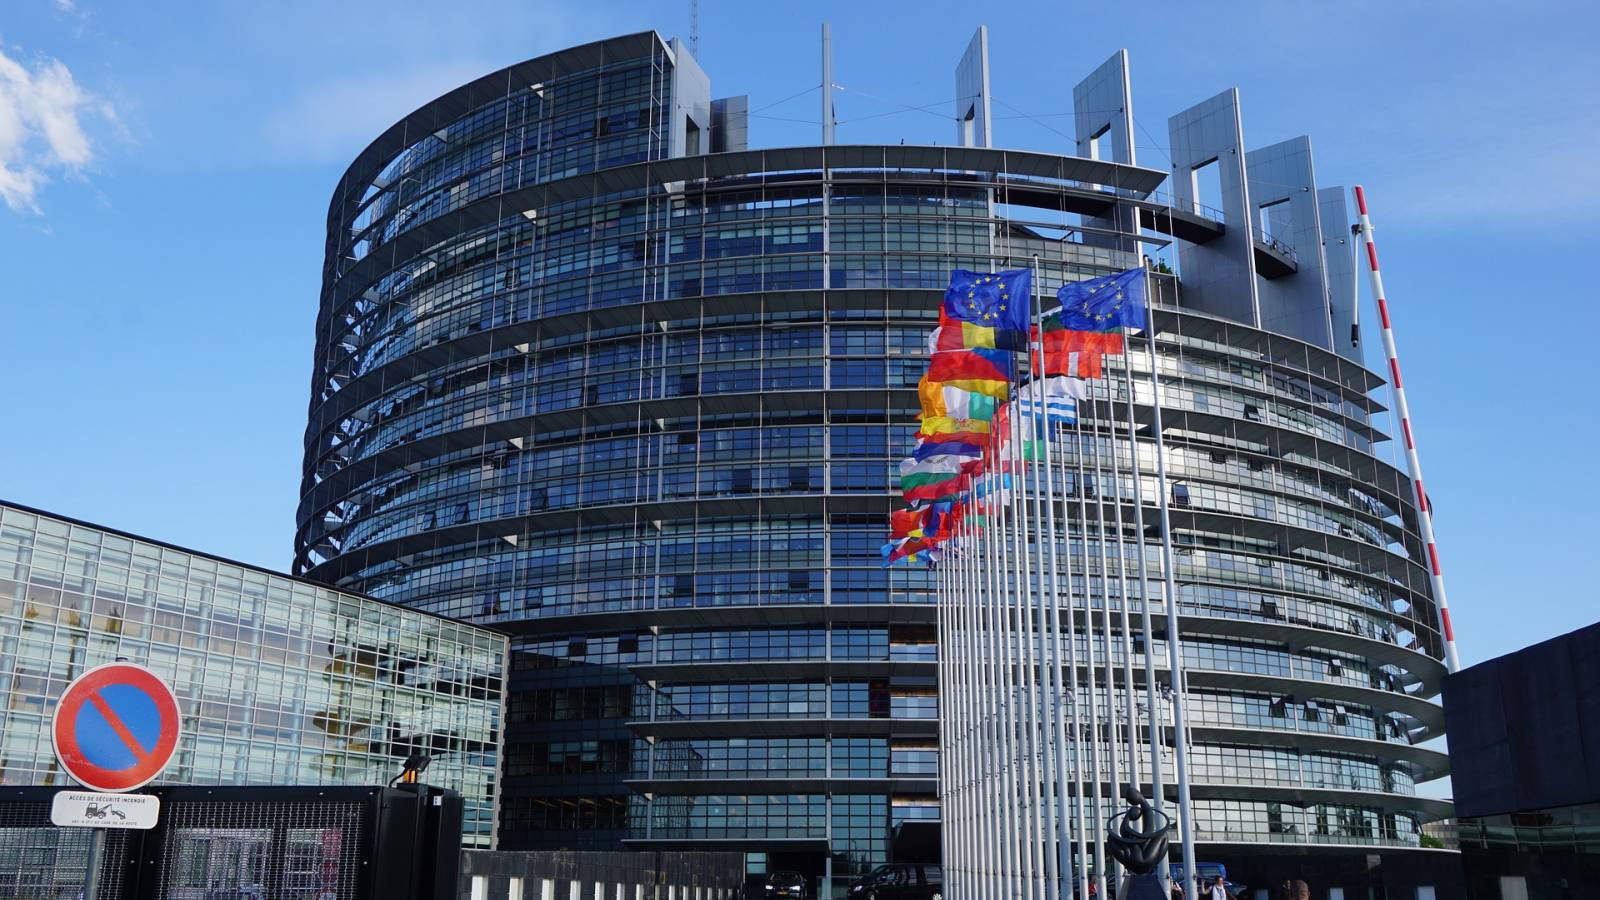 Parlamentul European va Vota o Rezolutie pentru Declararea Rusiei ca Stat Sponsor al Terorismului